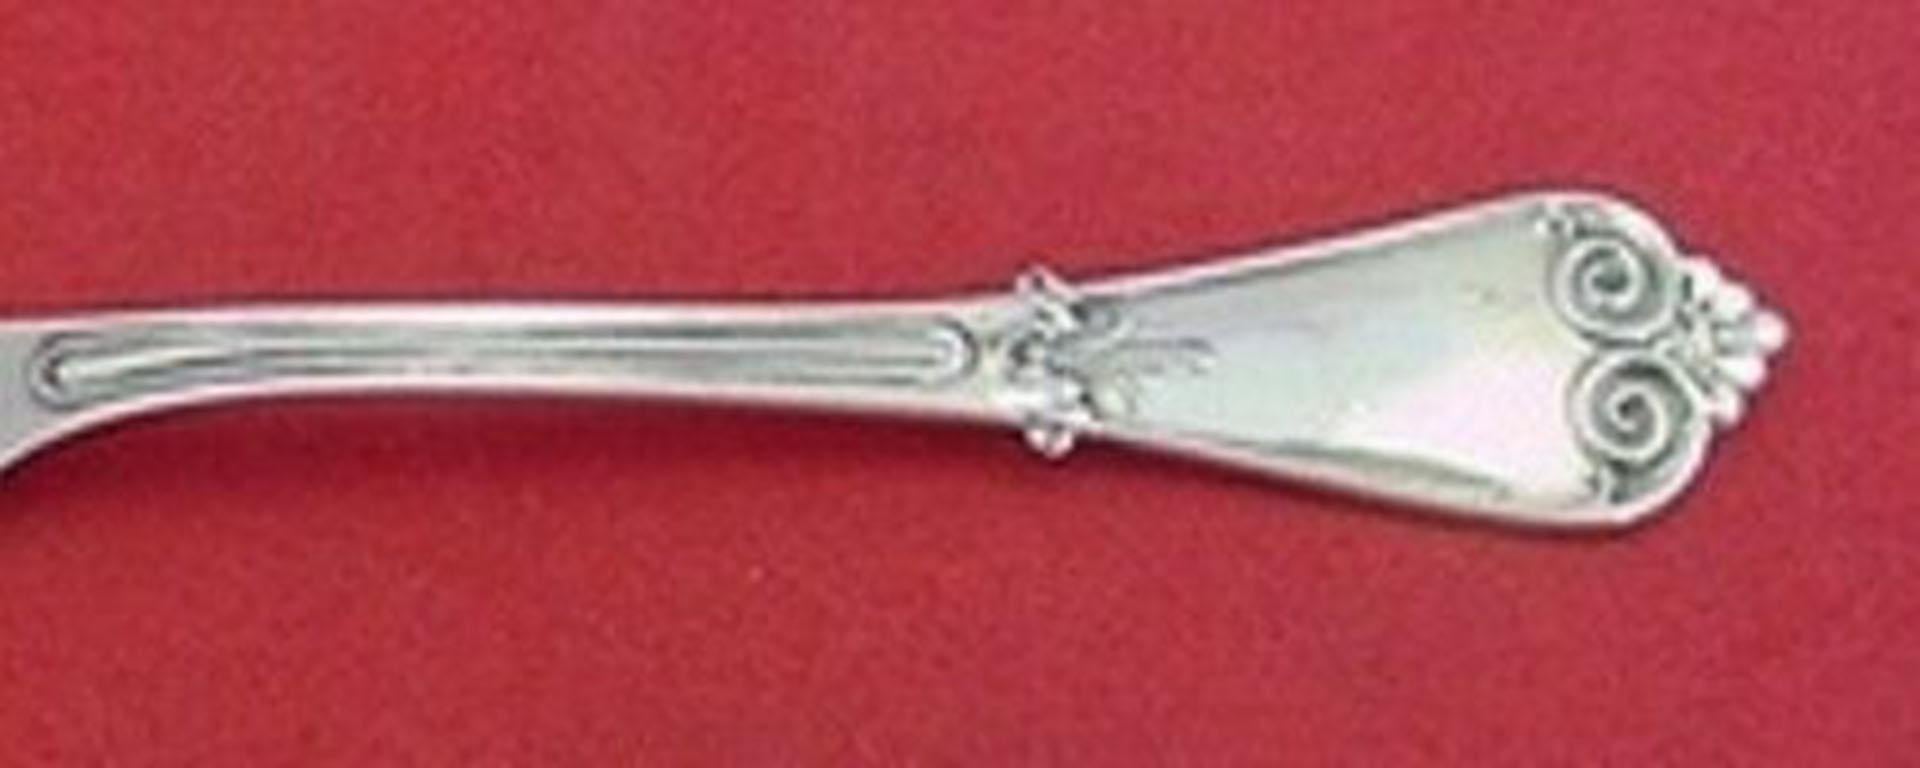 Sterling silver demitasse spoon 4